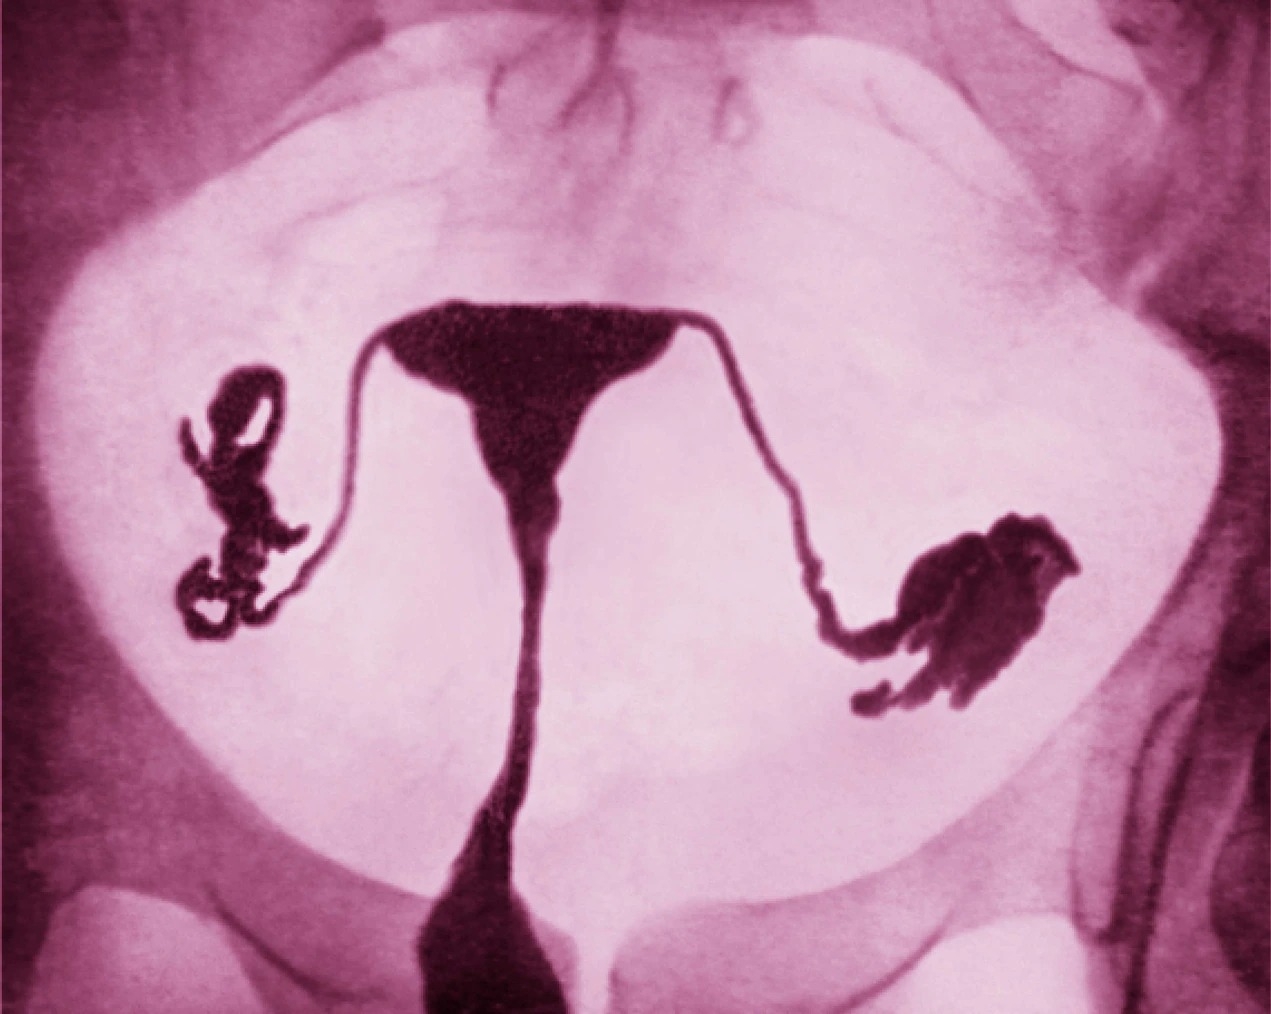 这张色彩增强子宫输卵管摄影显示女性生殖系统，包含输卵管和健康的子宫。PHOTOGRAPH BY JAMES CAVALLINI，SCIENCE SOURCE